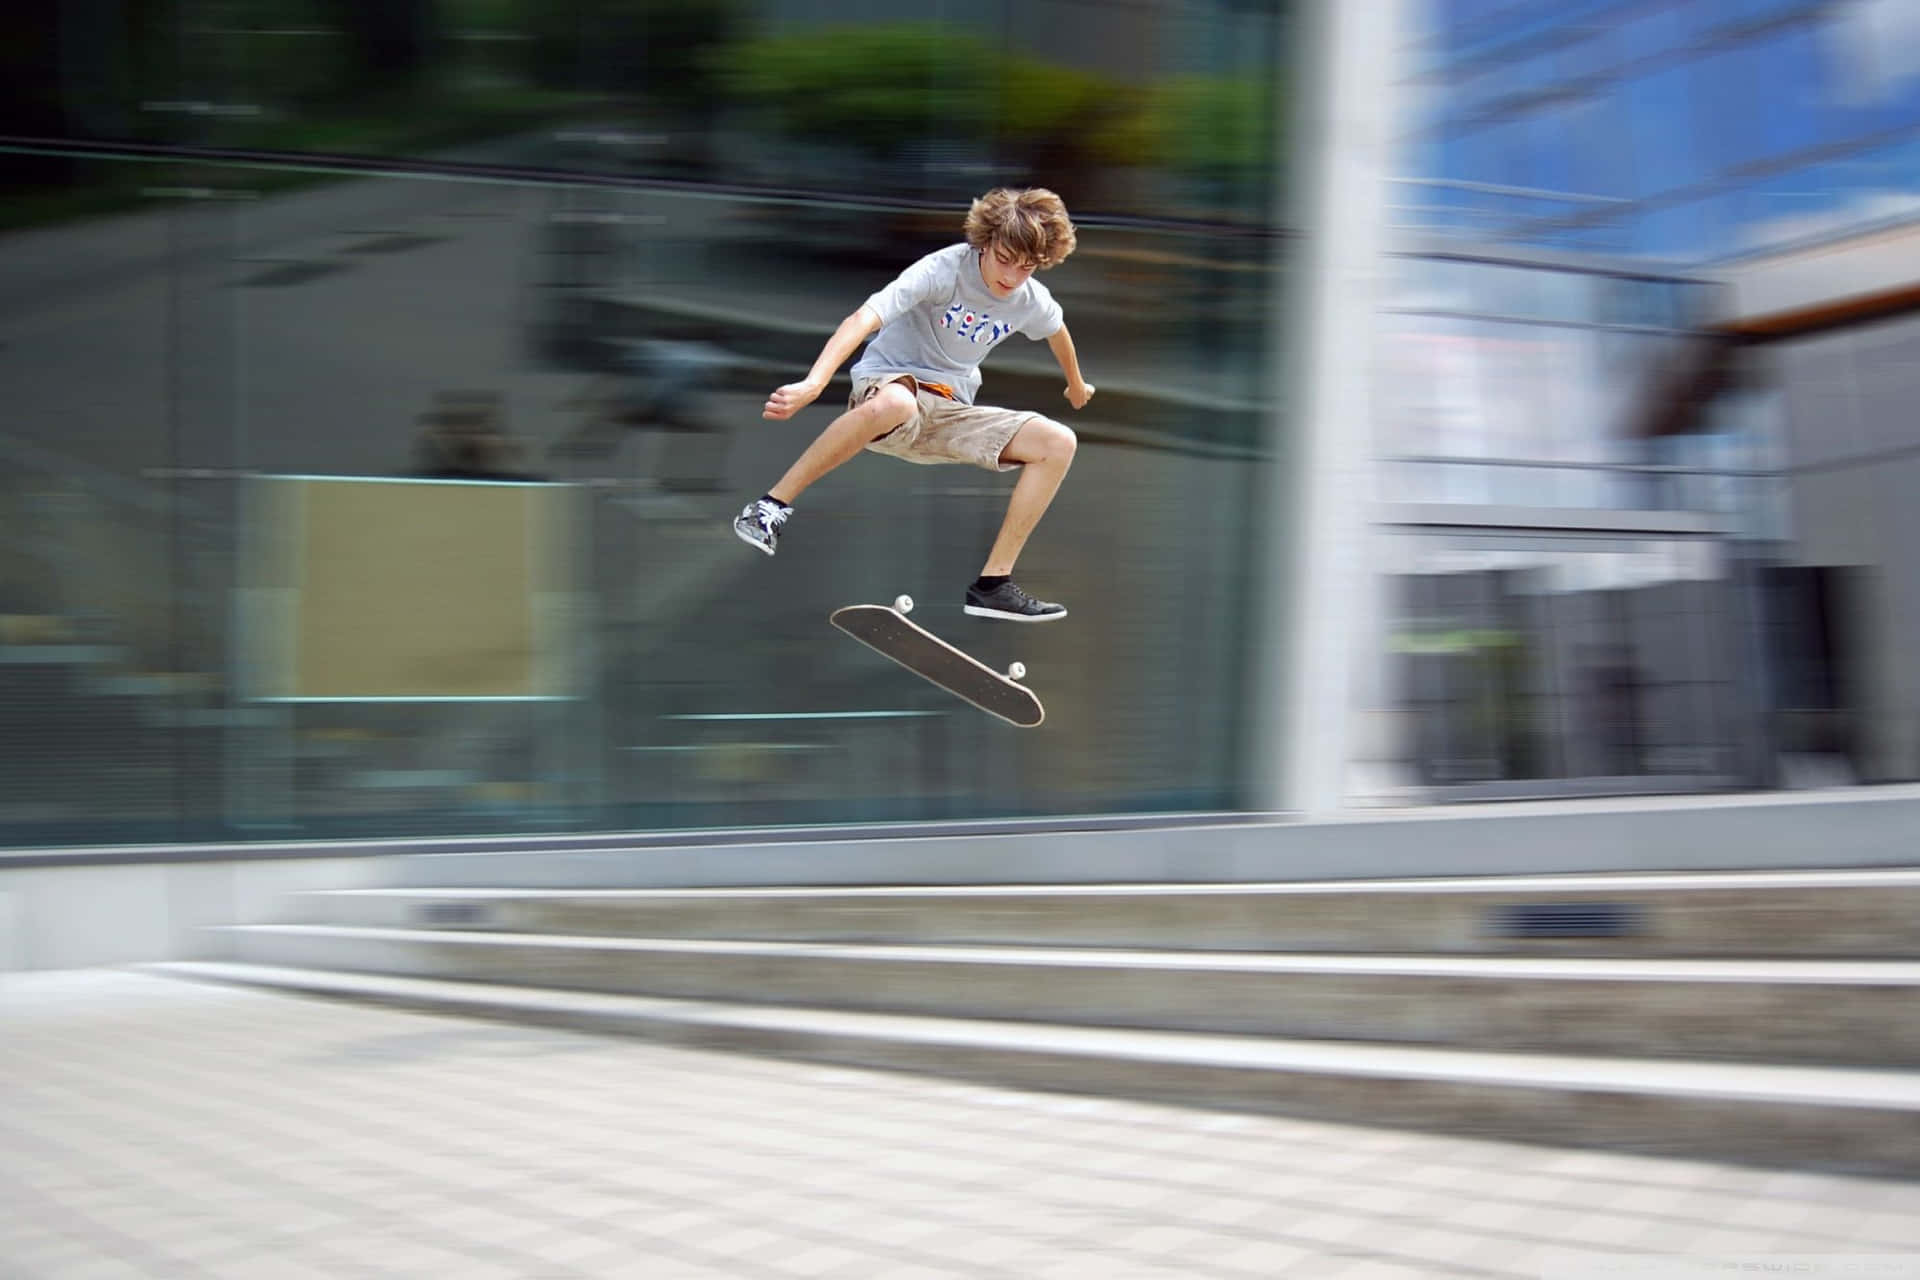 Einjunge Macht Einen Skateboard-trick.